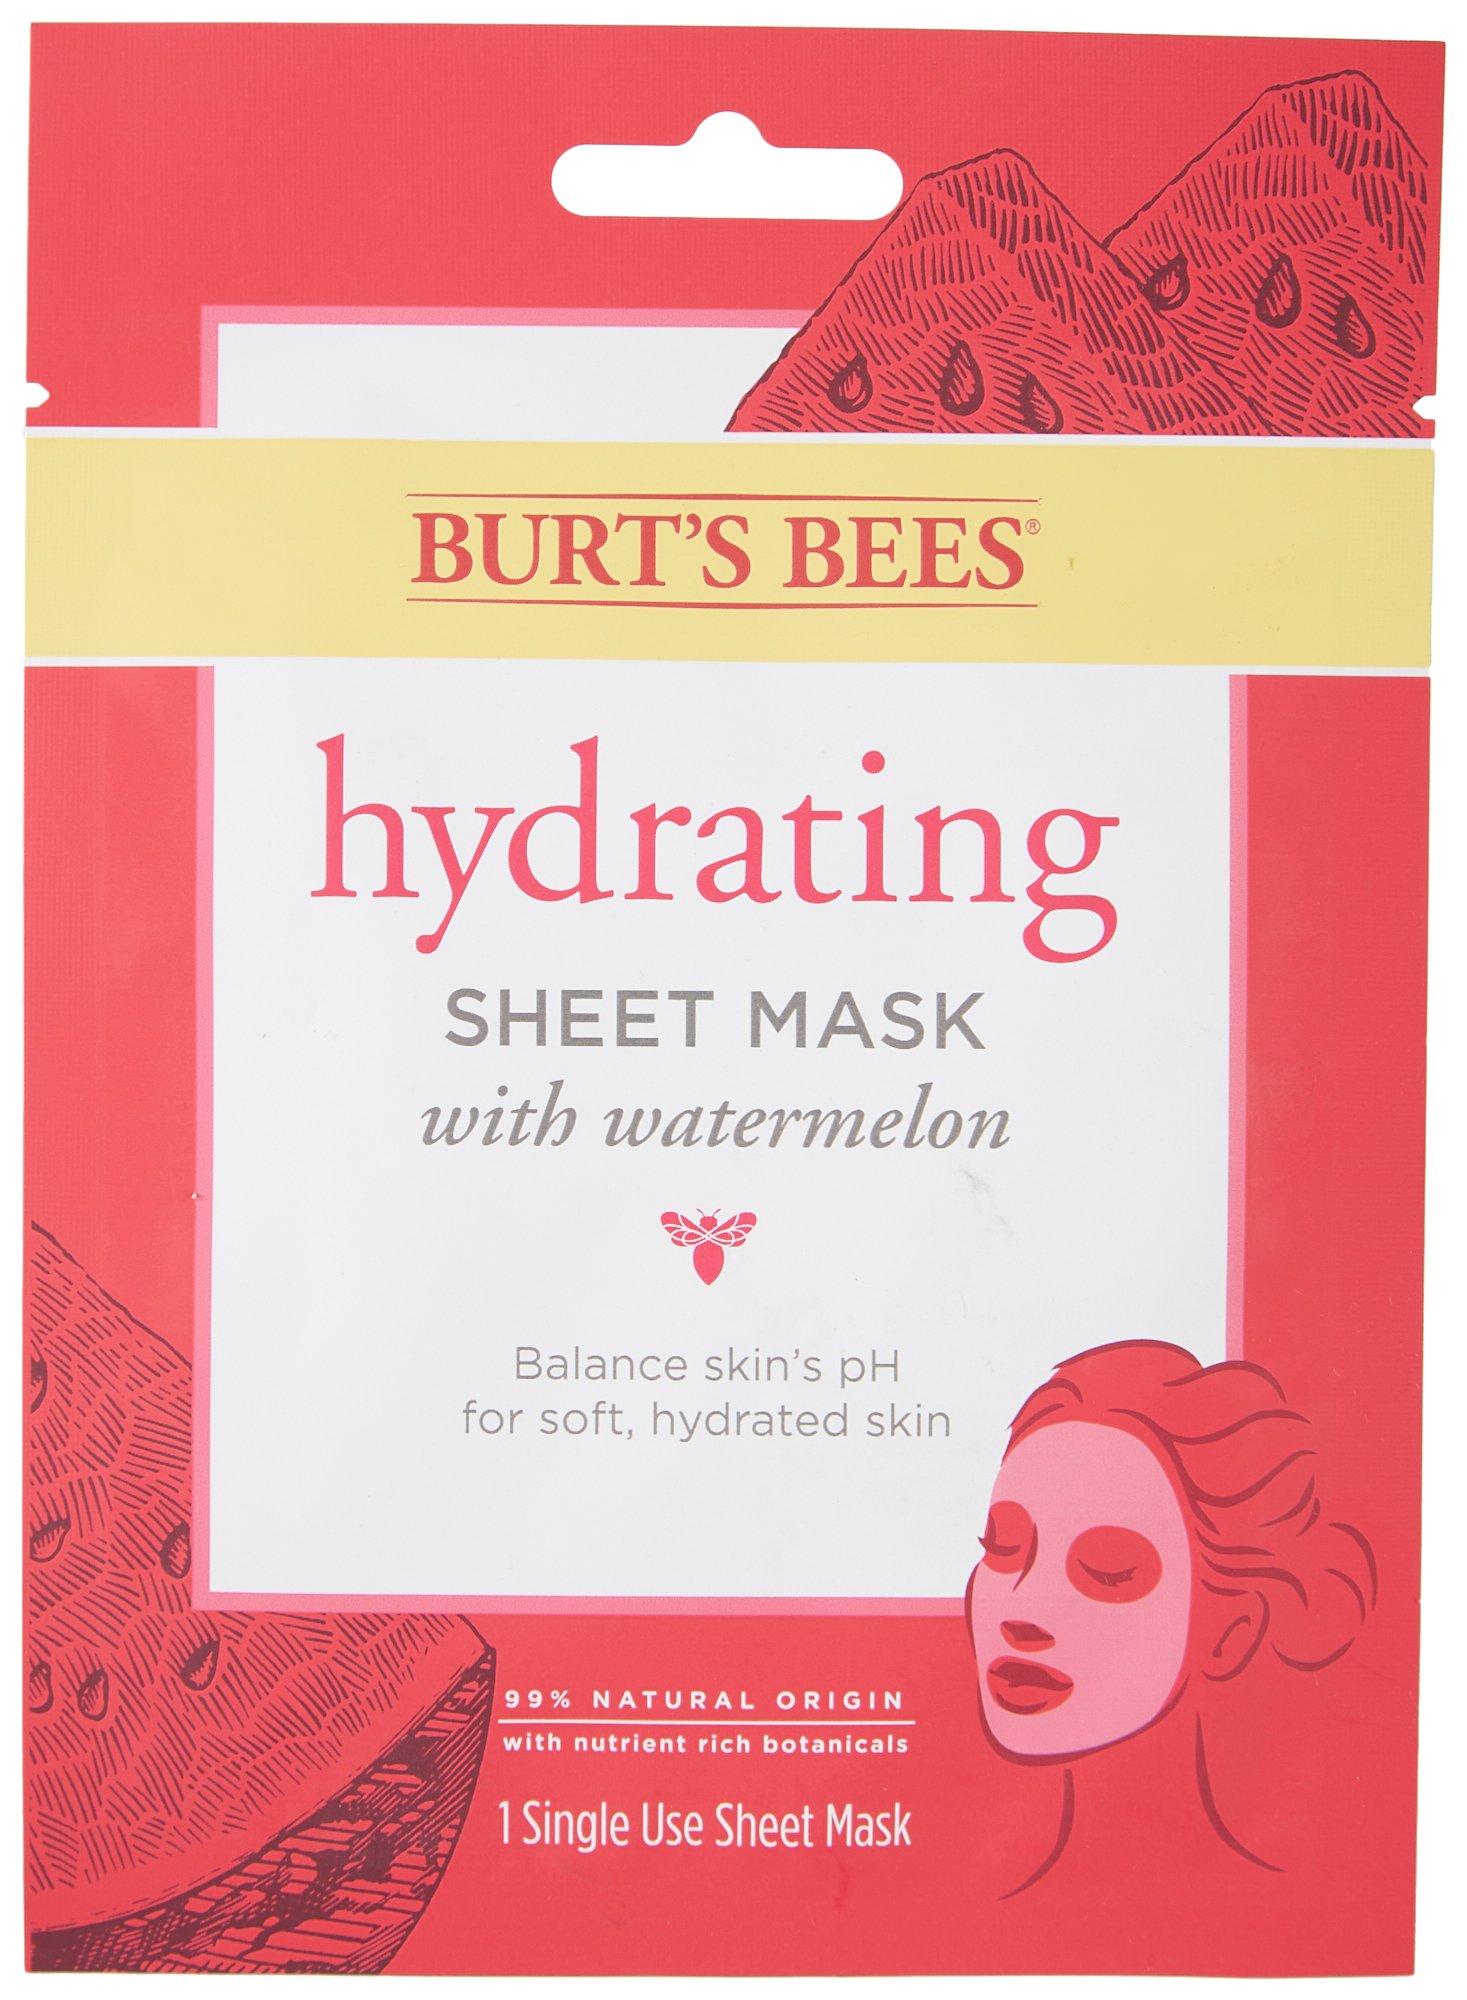 Hydrating Watermelon Sheet Mask